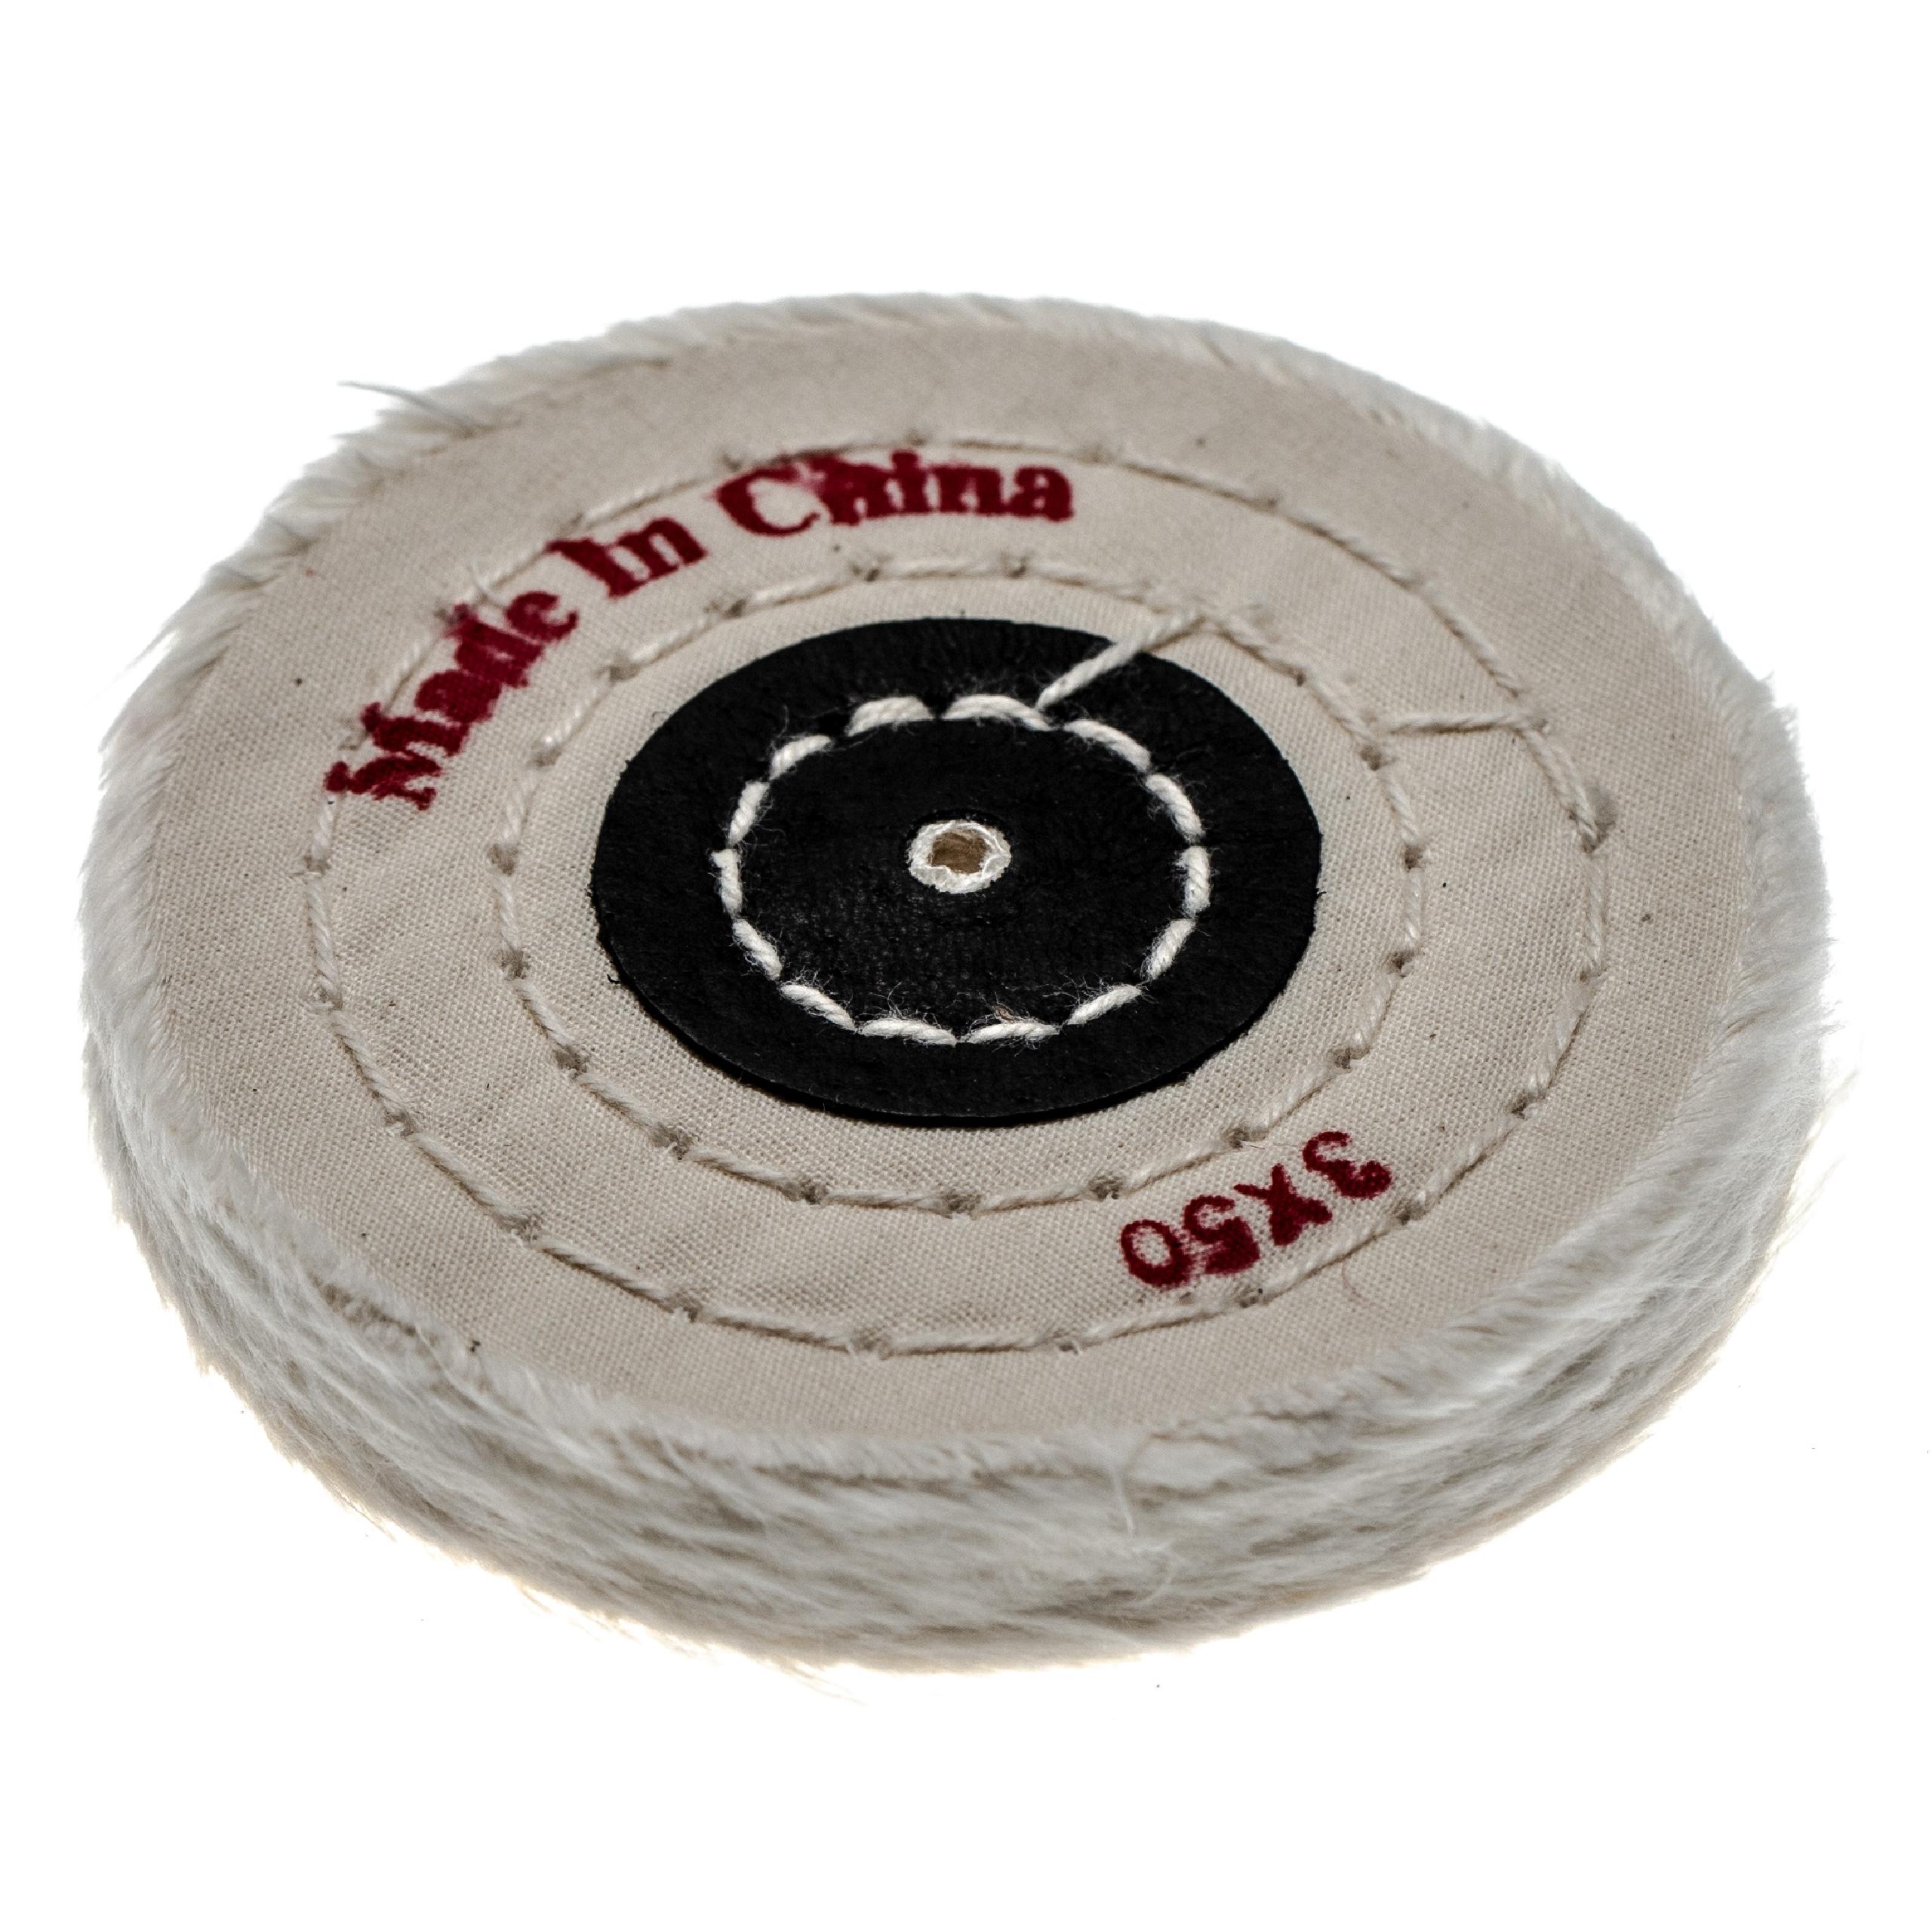 Disco lucidante per smerigliatrici trapani, diametro 7,5 cm, color crema